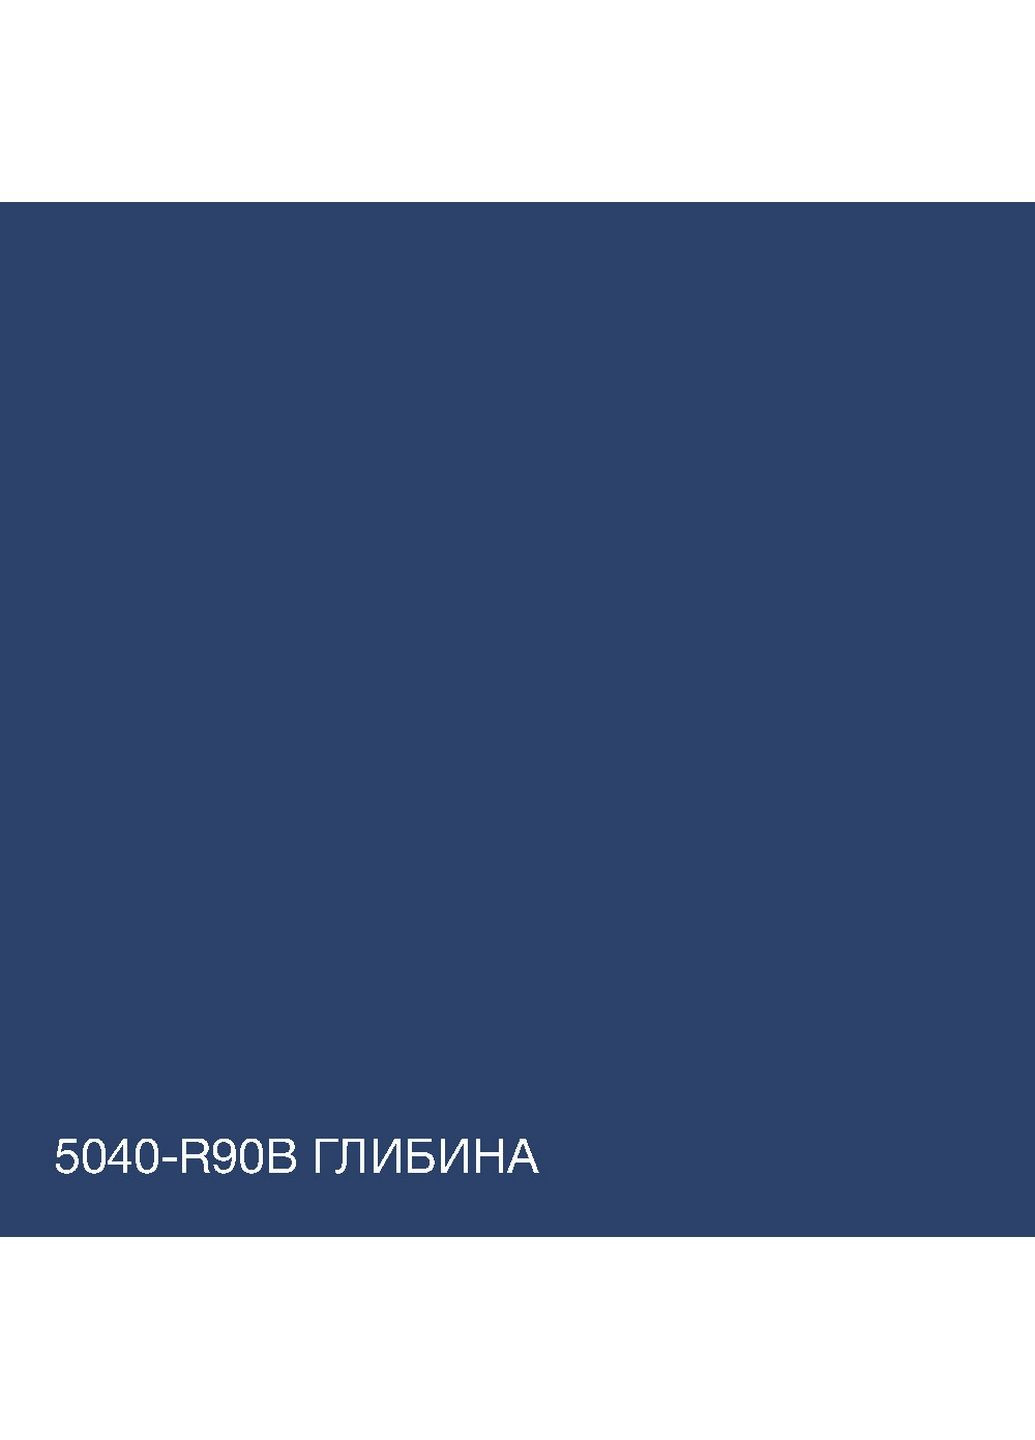 Краска Акрил-латексная Фасадная 5040-R90B (C) Глубина 10л SkyLine (283327507)